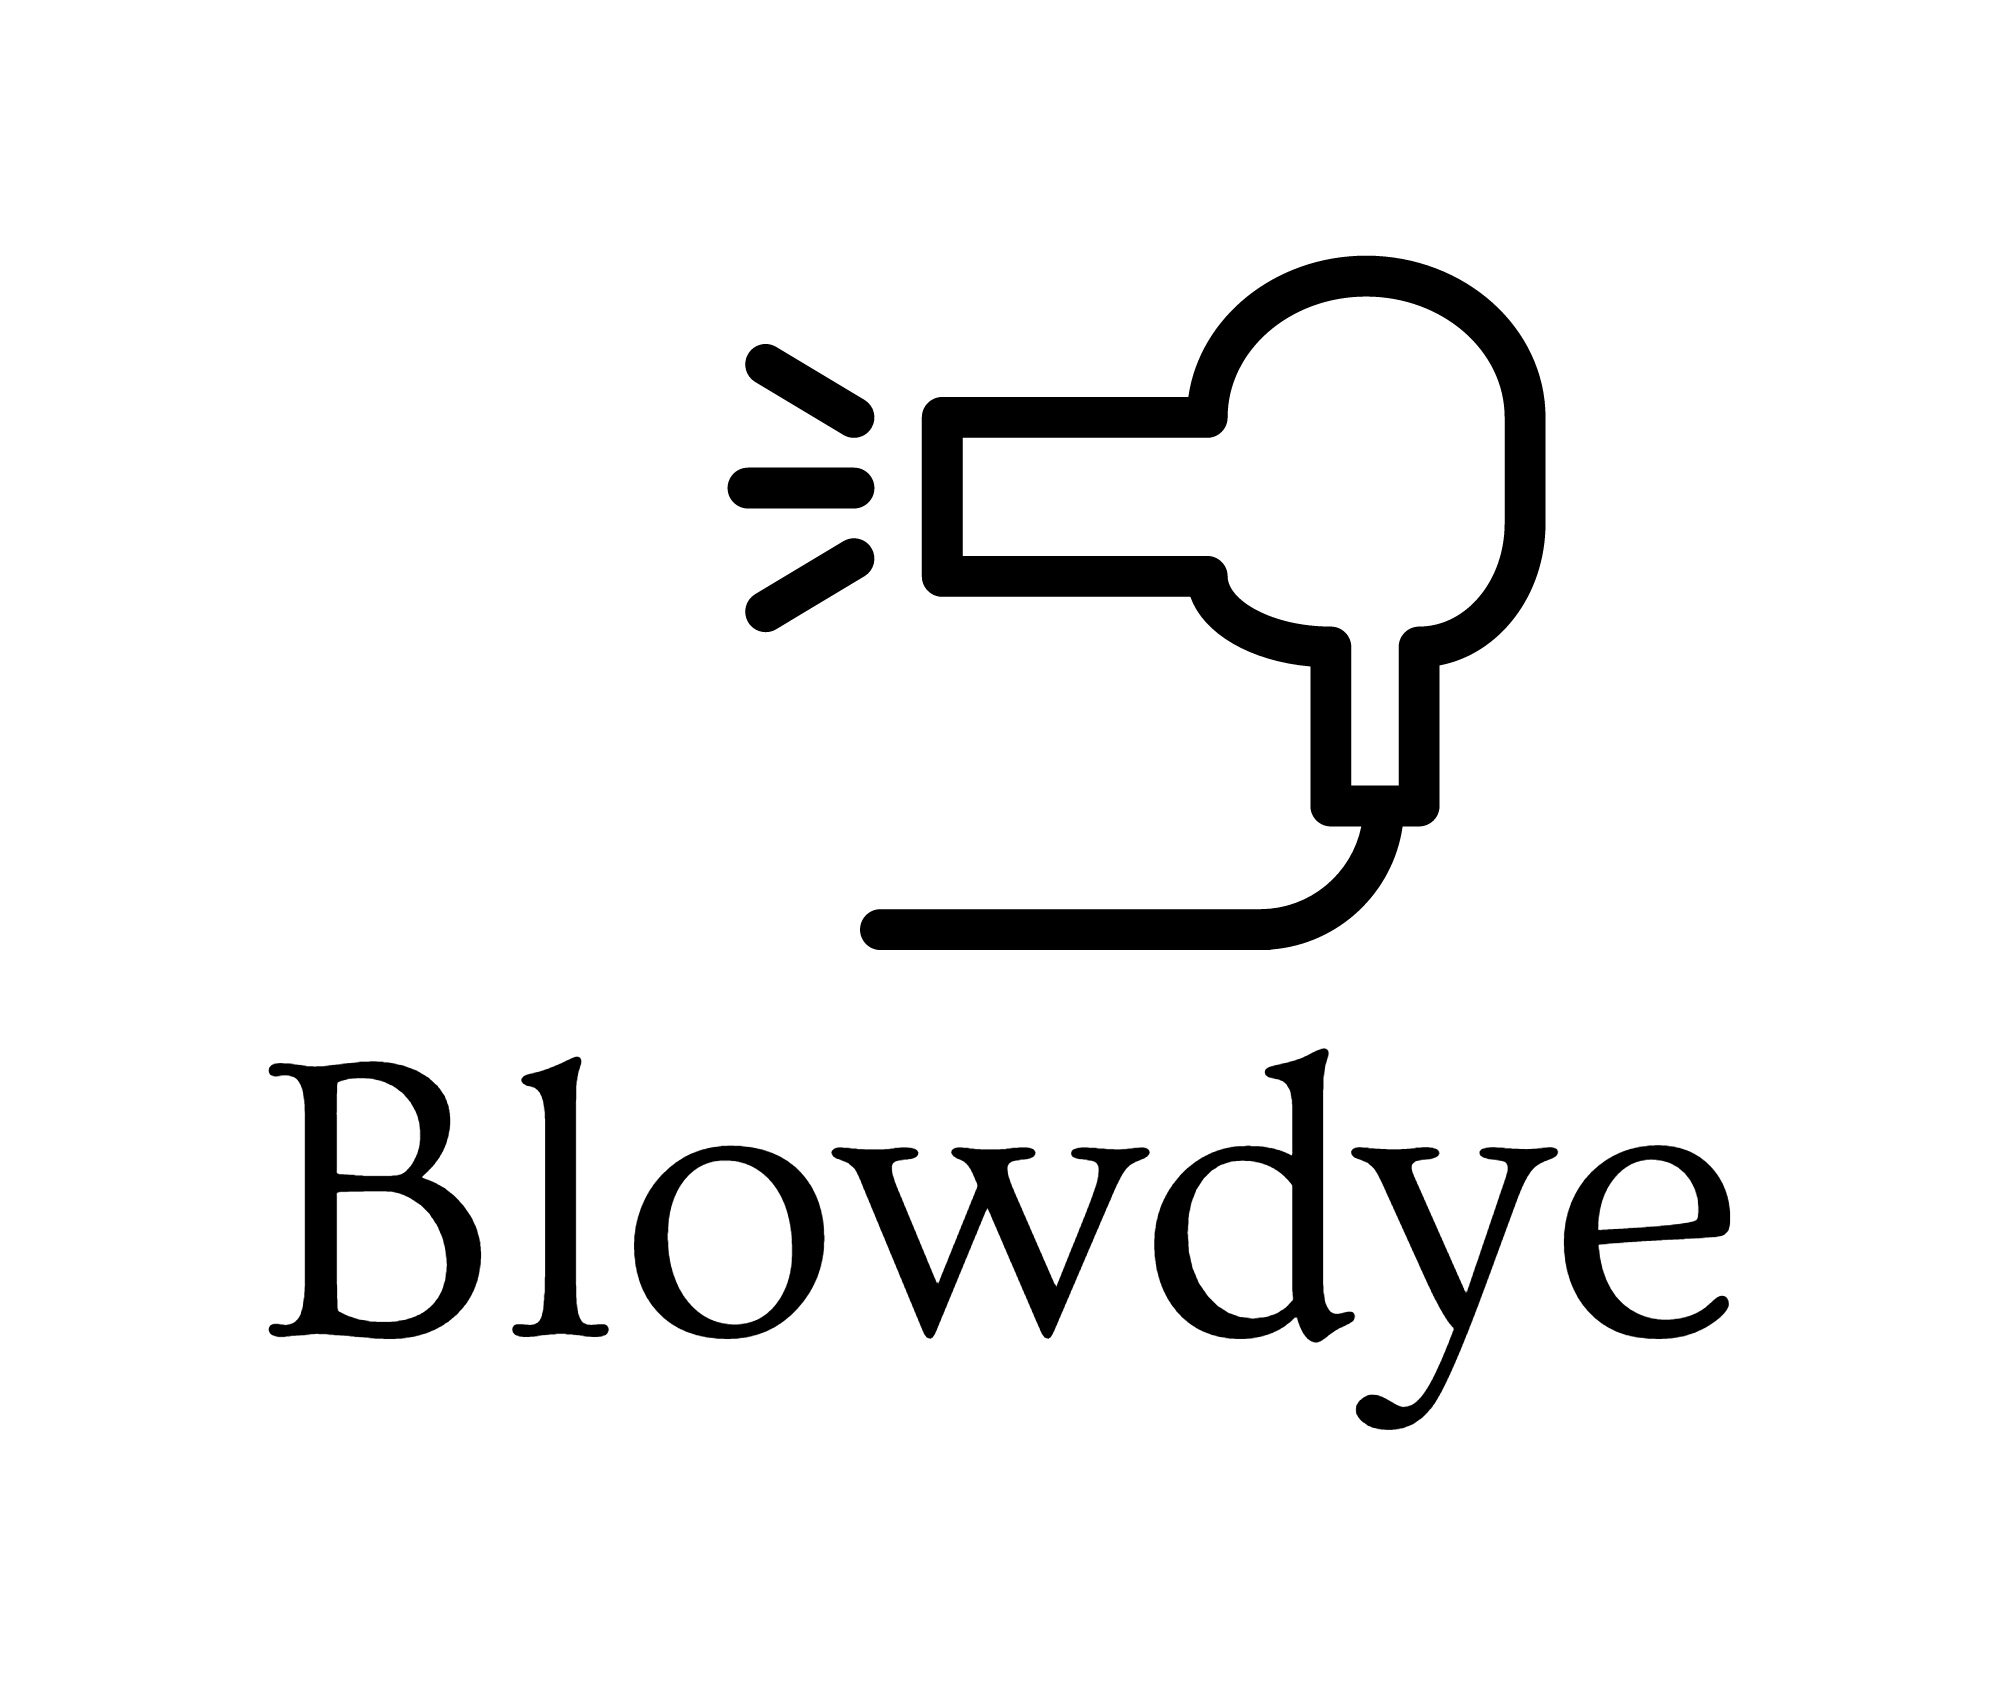 Blowdye